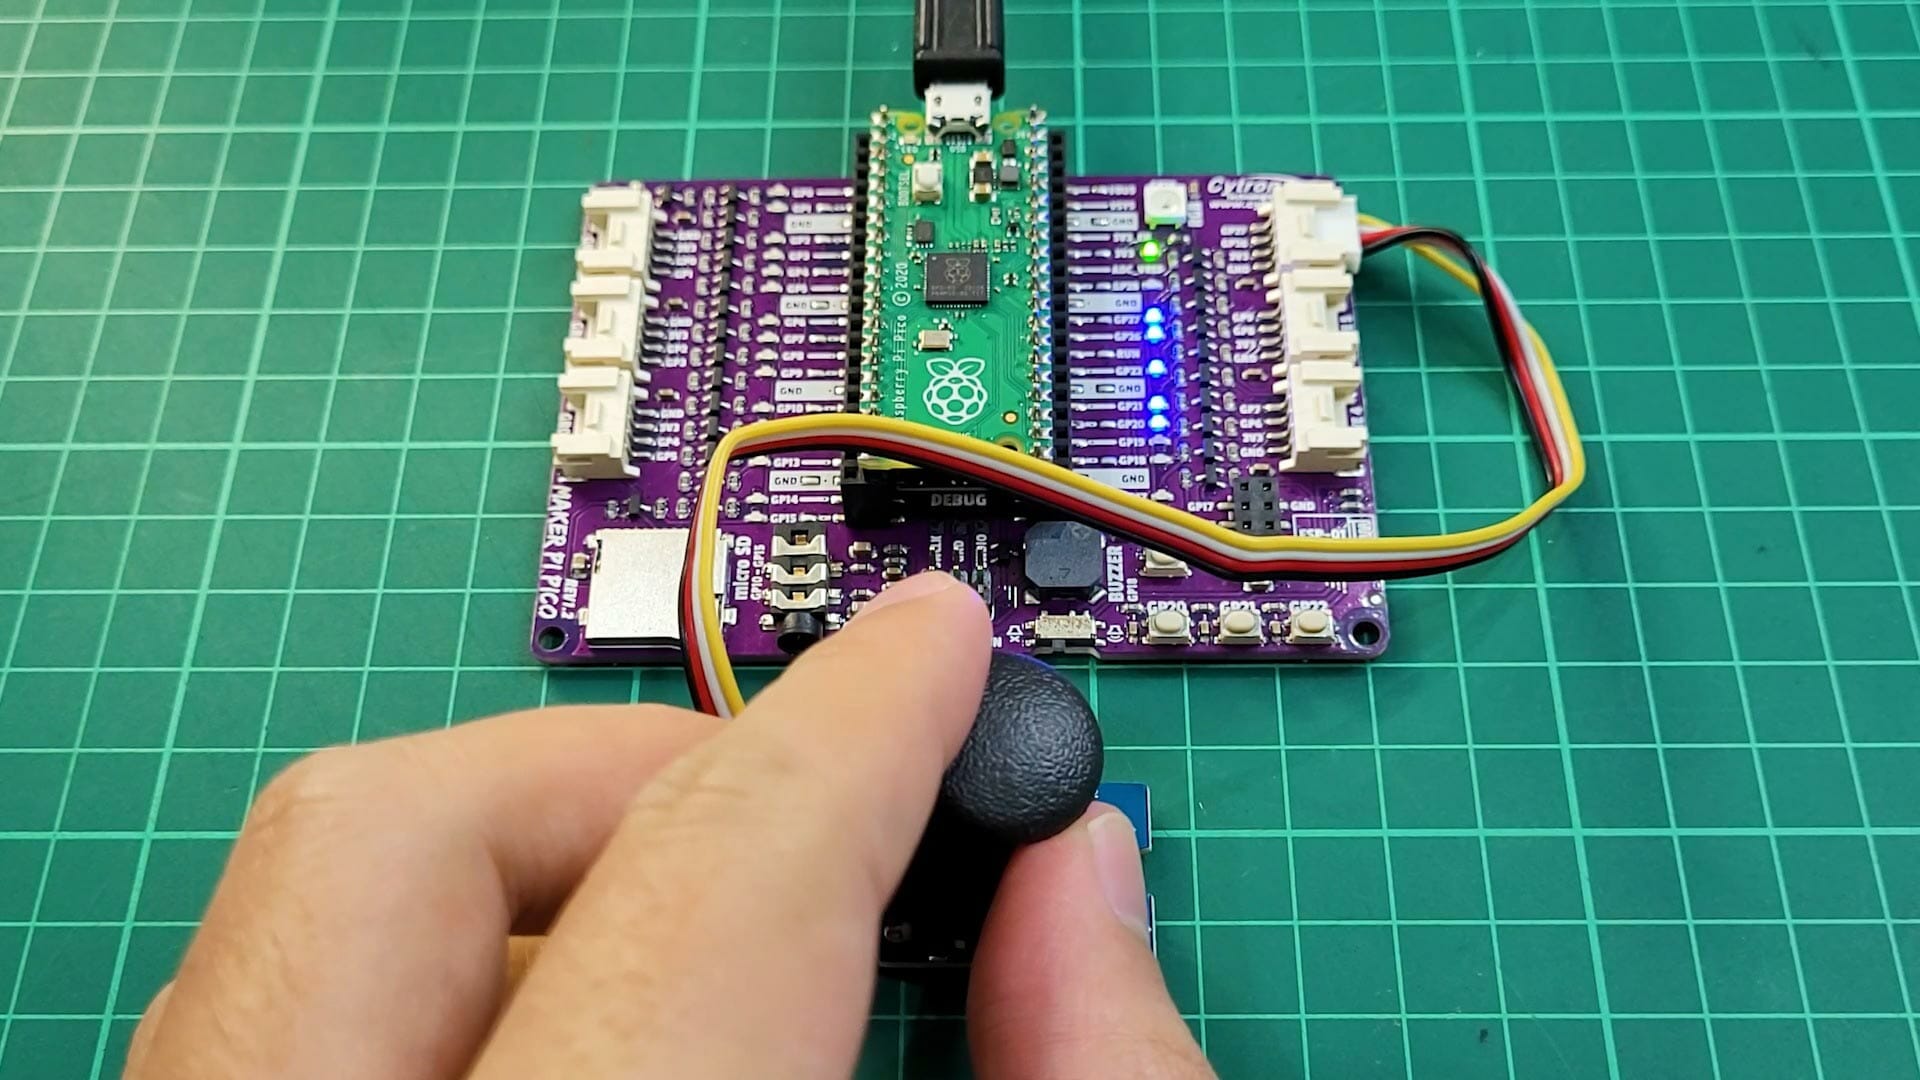 DIY USB Keyboard Mouse Using Maker Pi Pico